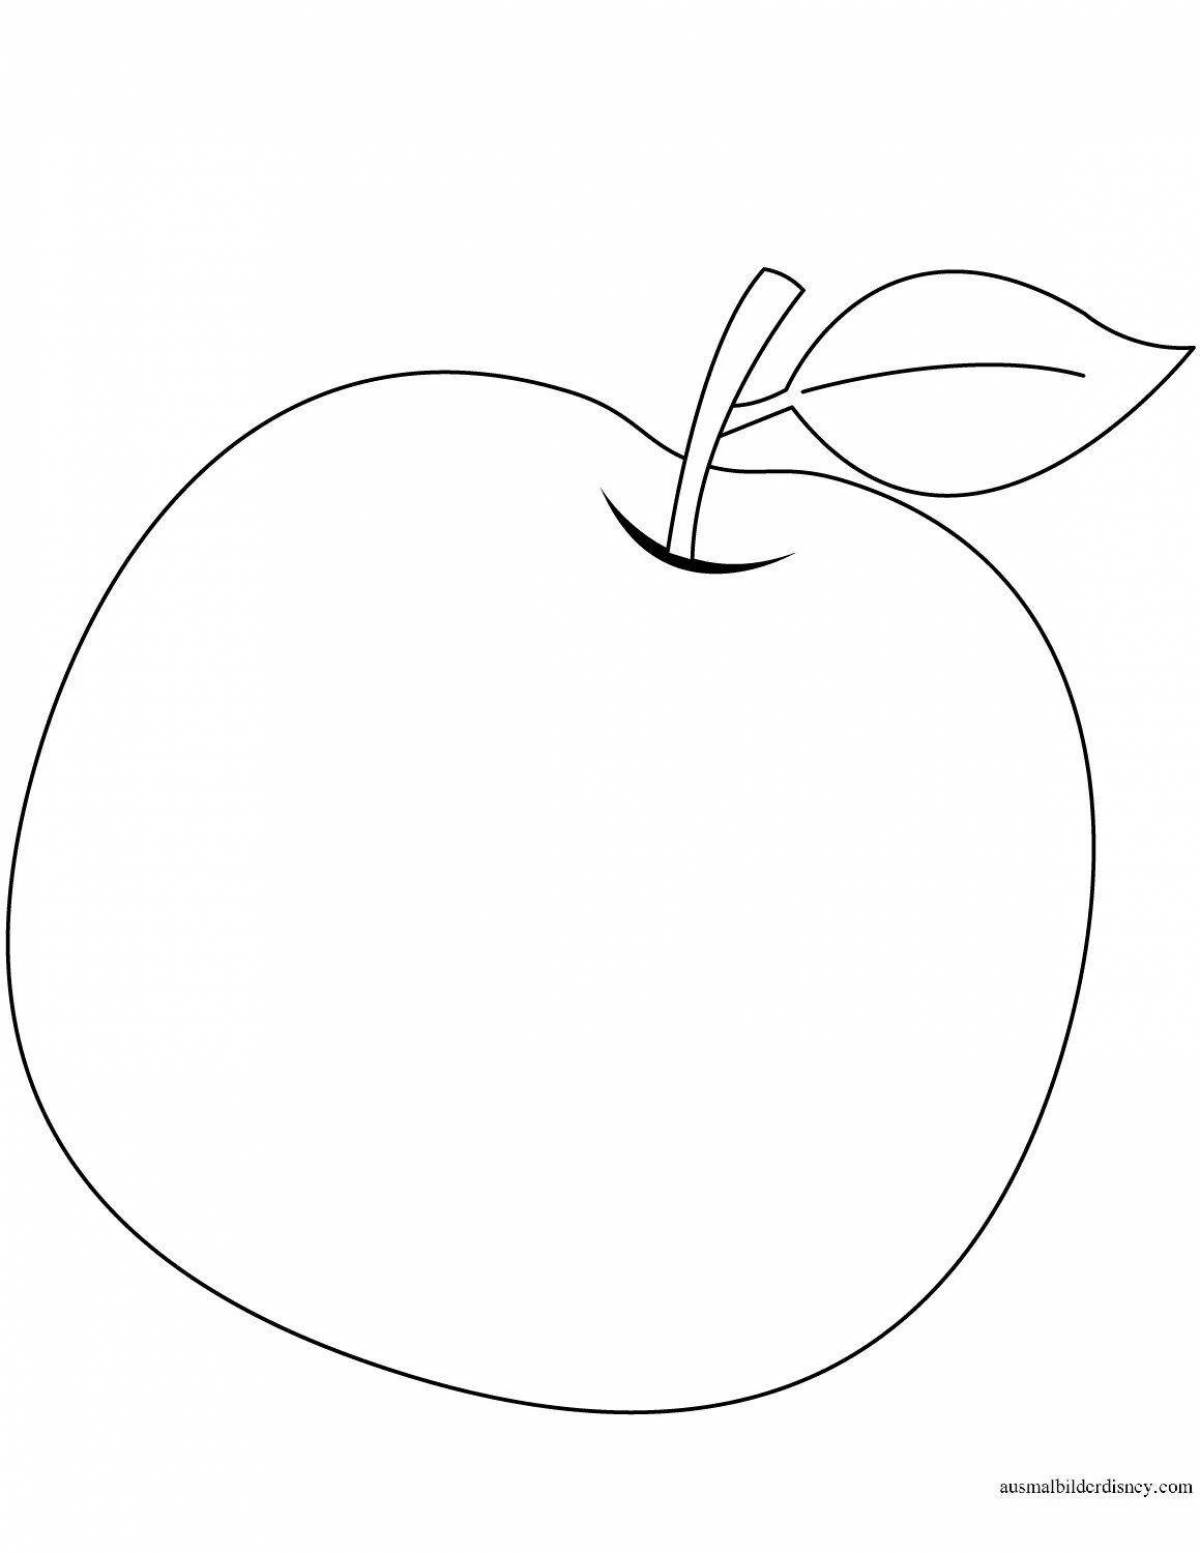 Восхитительная страница раскраски с рисунком яблока